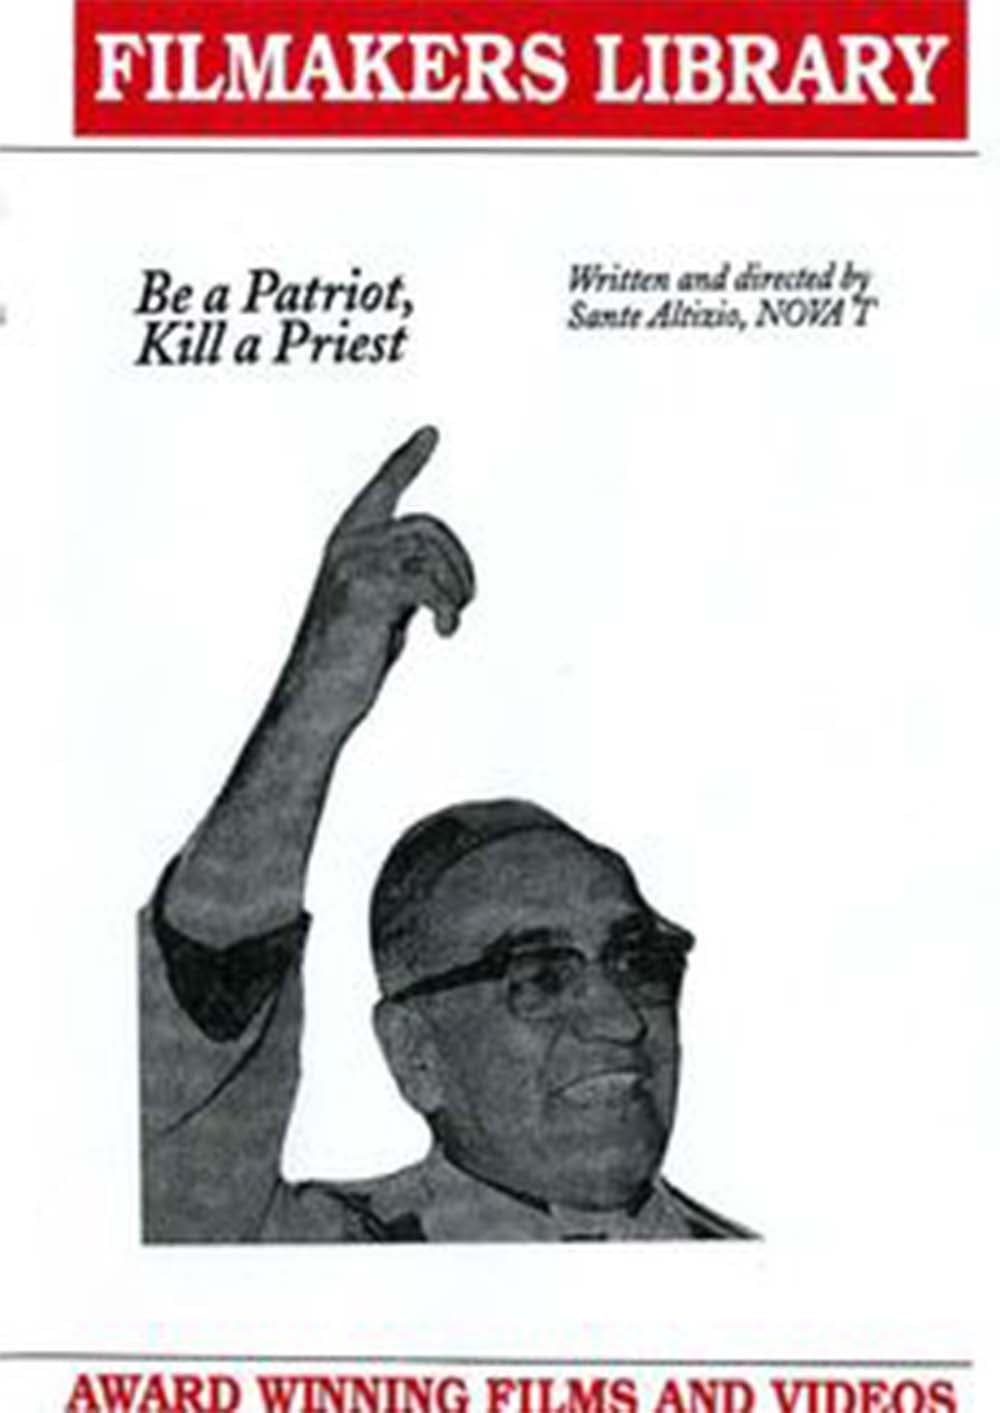 Be A Patriot, Kill A Priest